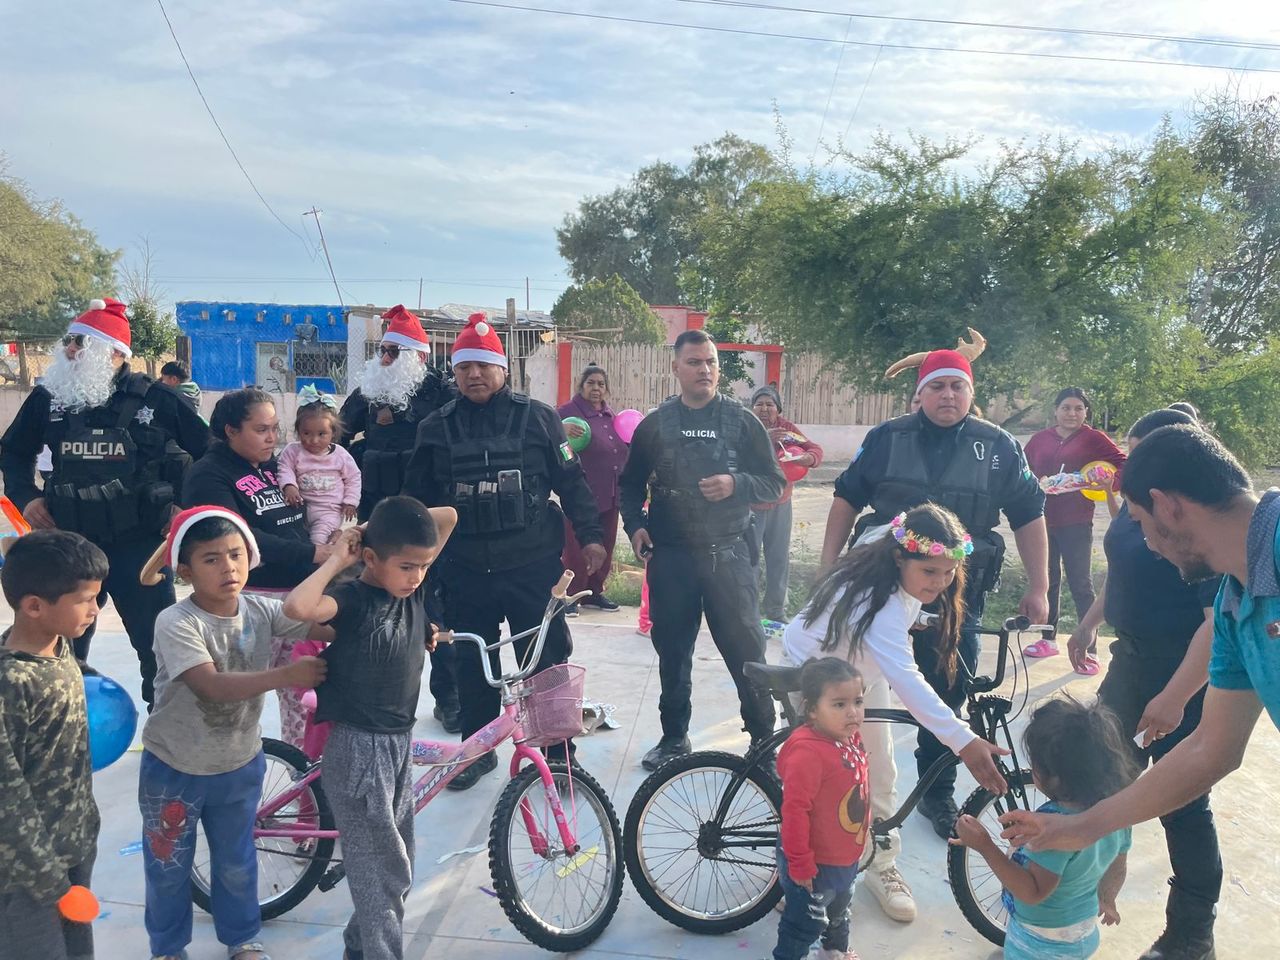 Este año además de los bolos, juguetes y la piñata, los agentes se organizaron para comprar bicicletas para sortearlas. (EL SIGLO DE TORREÓN)